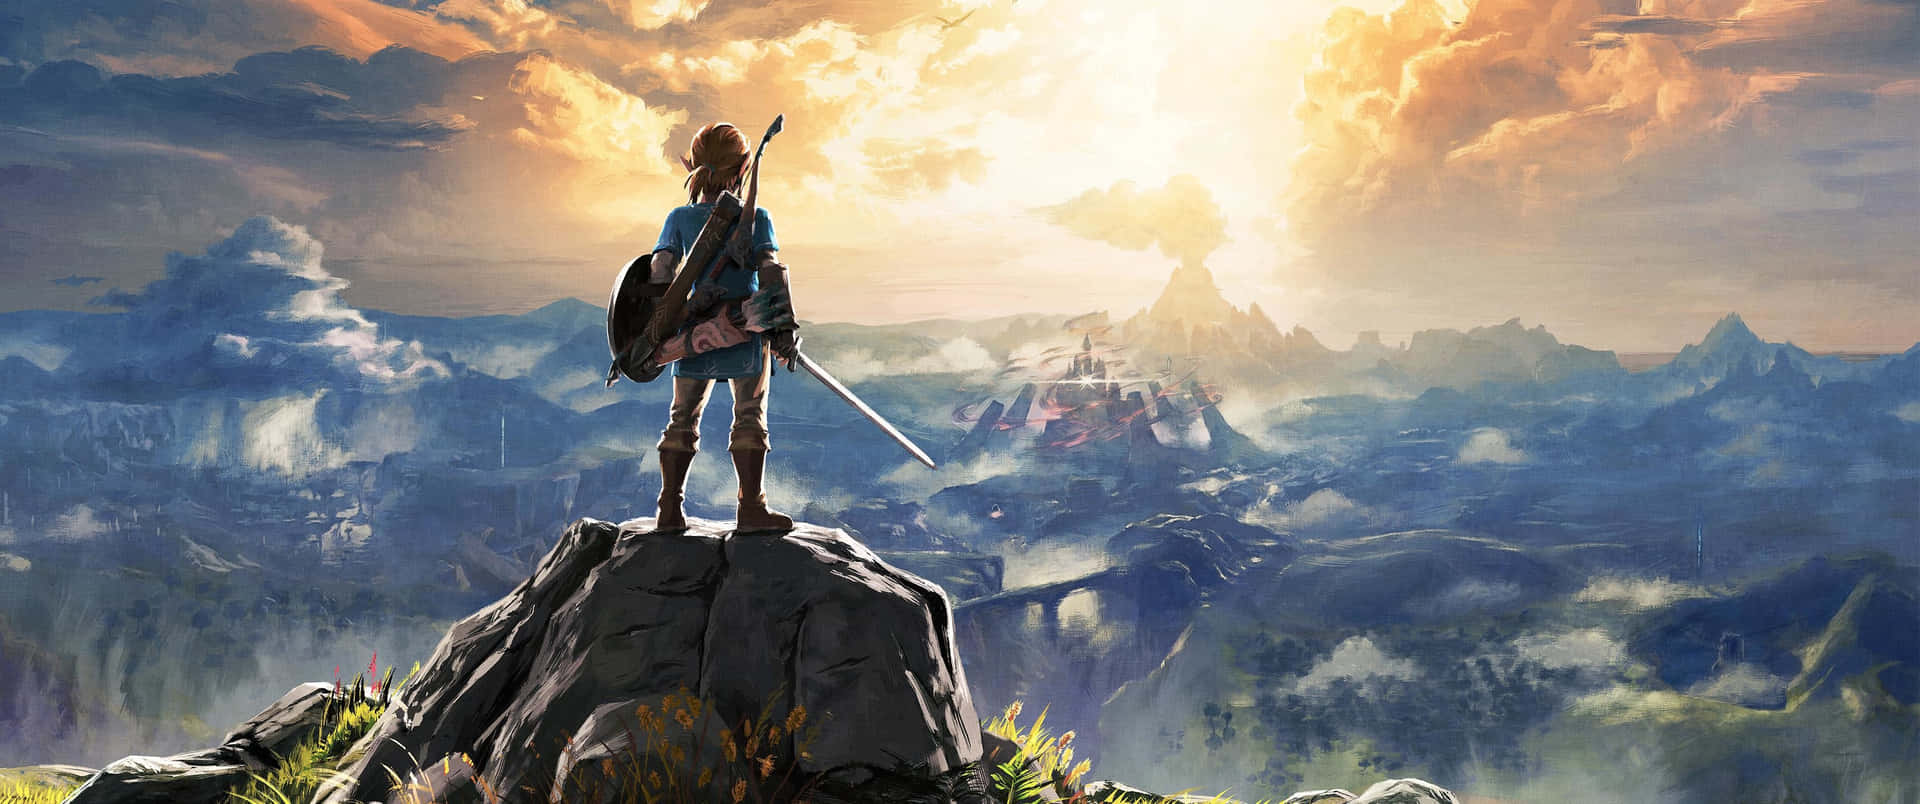 The Legend of Zelda Hyrule - An epic adventure unfolds in a breathtaking fantasy world Wallpaper